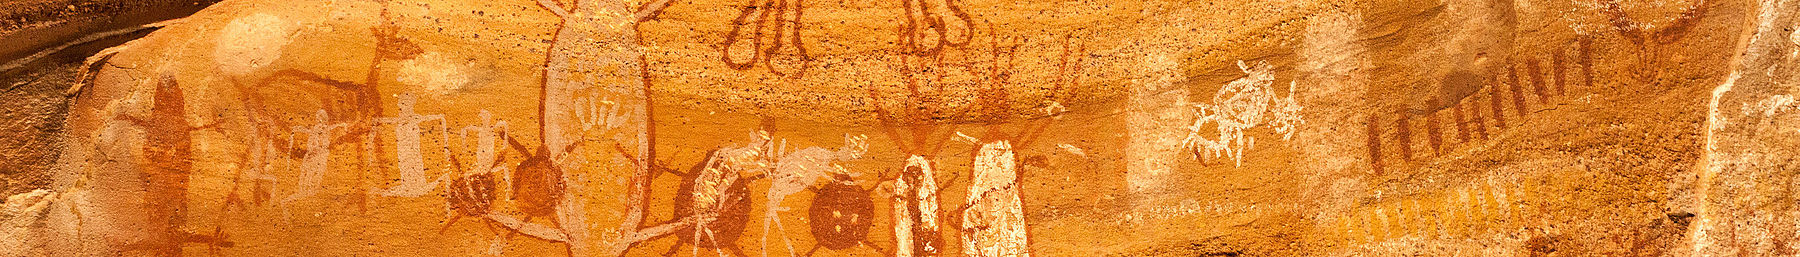 Sepanduk Serra da Capivara Petroglyphs.jpg